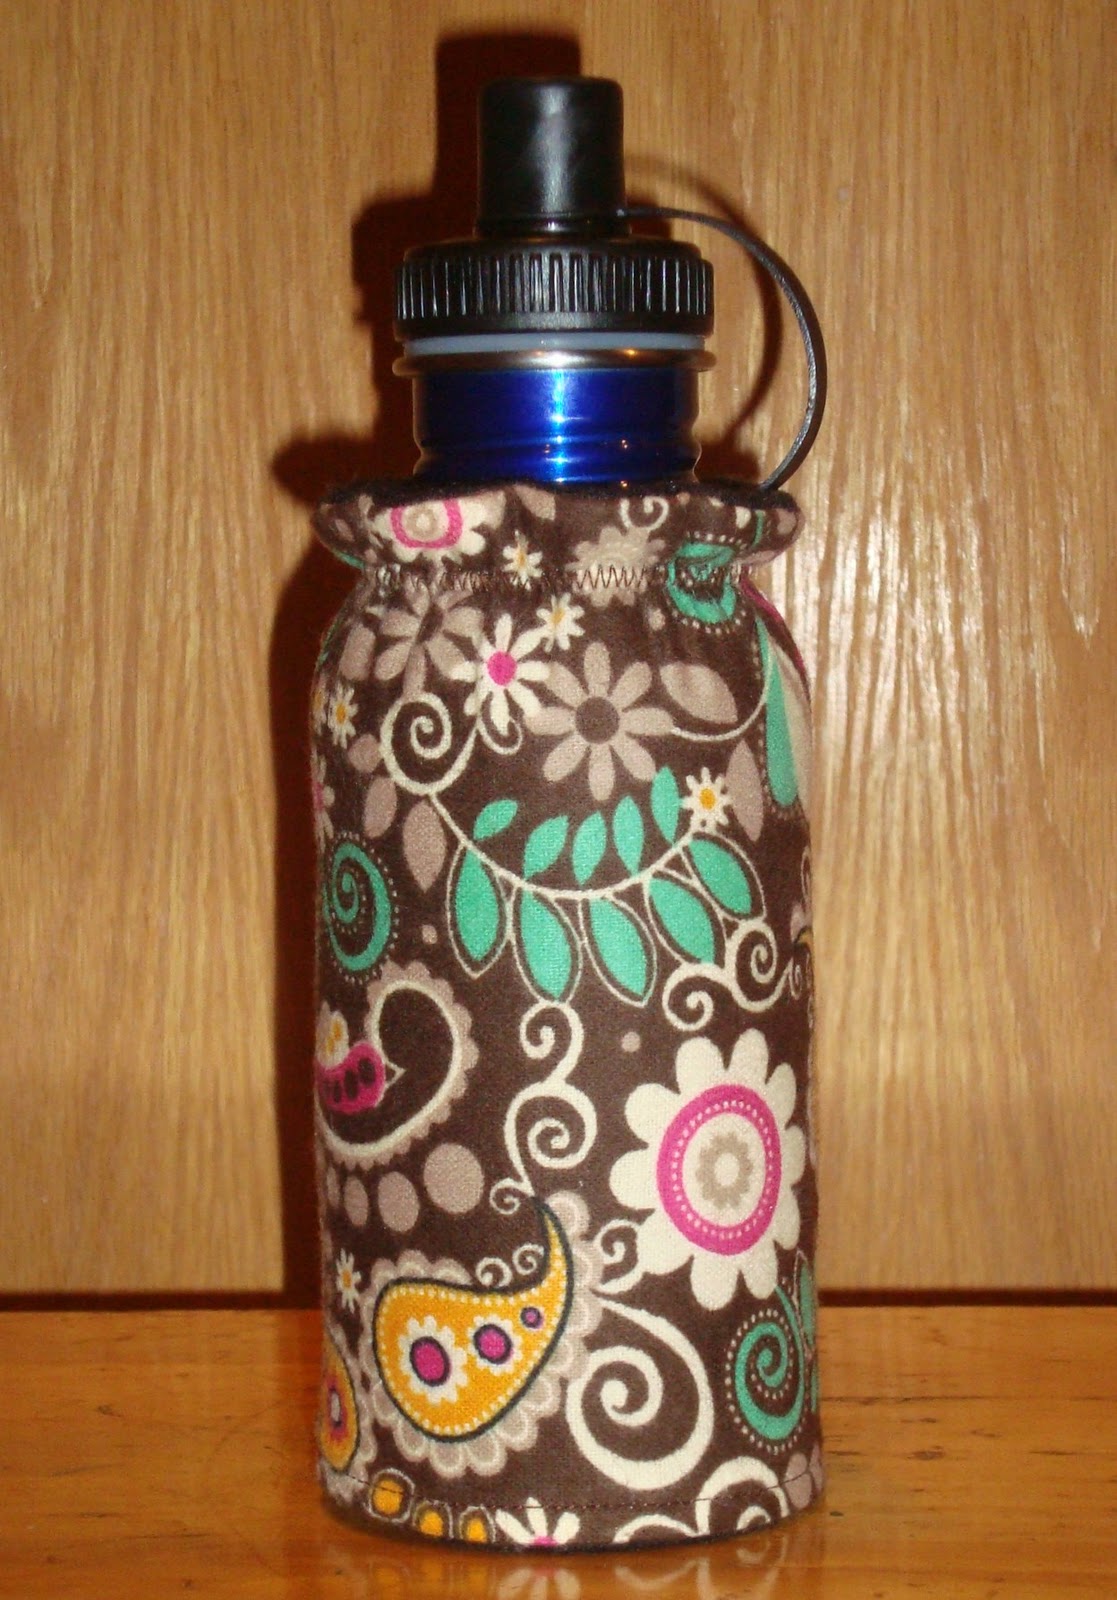 Handmade Happiness: Water bottle cozy tutorial